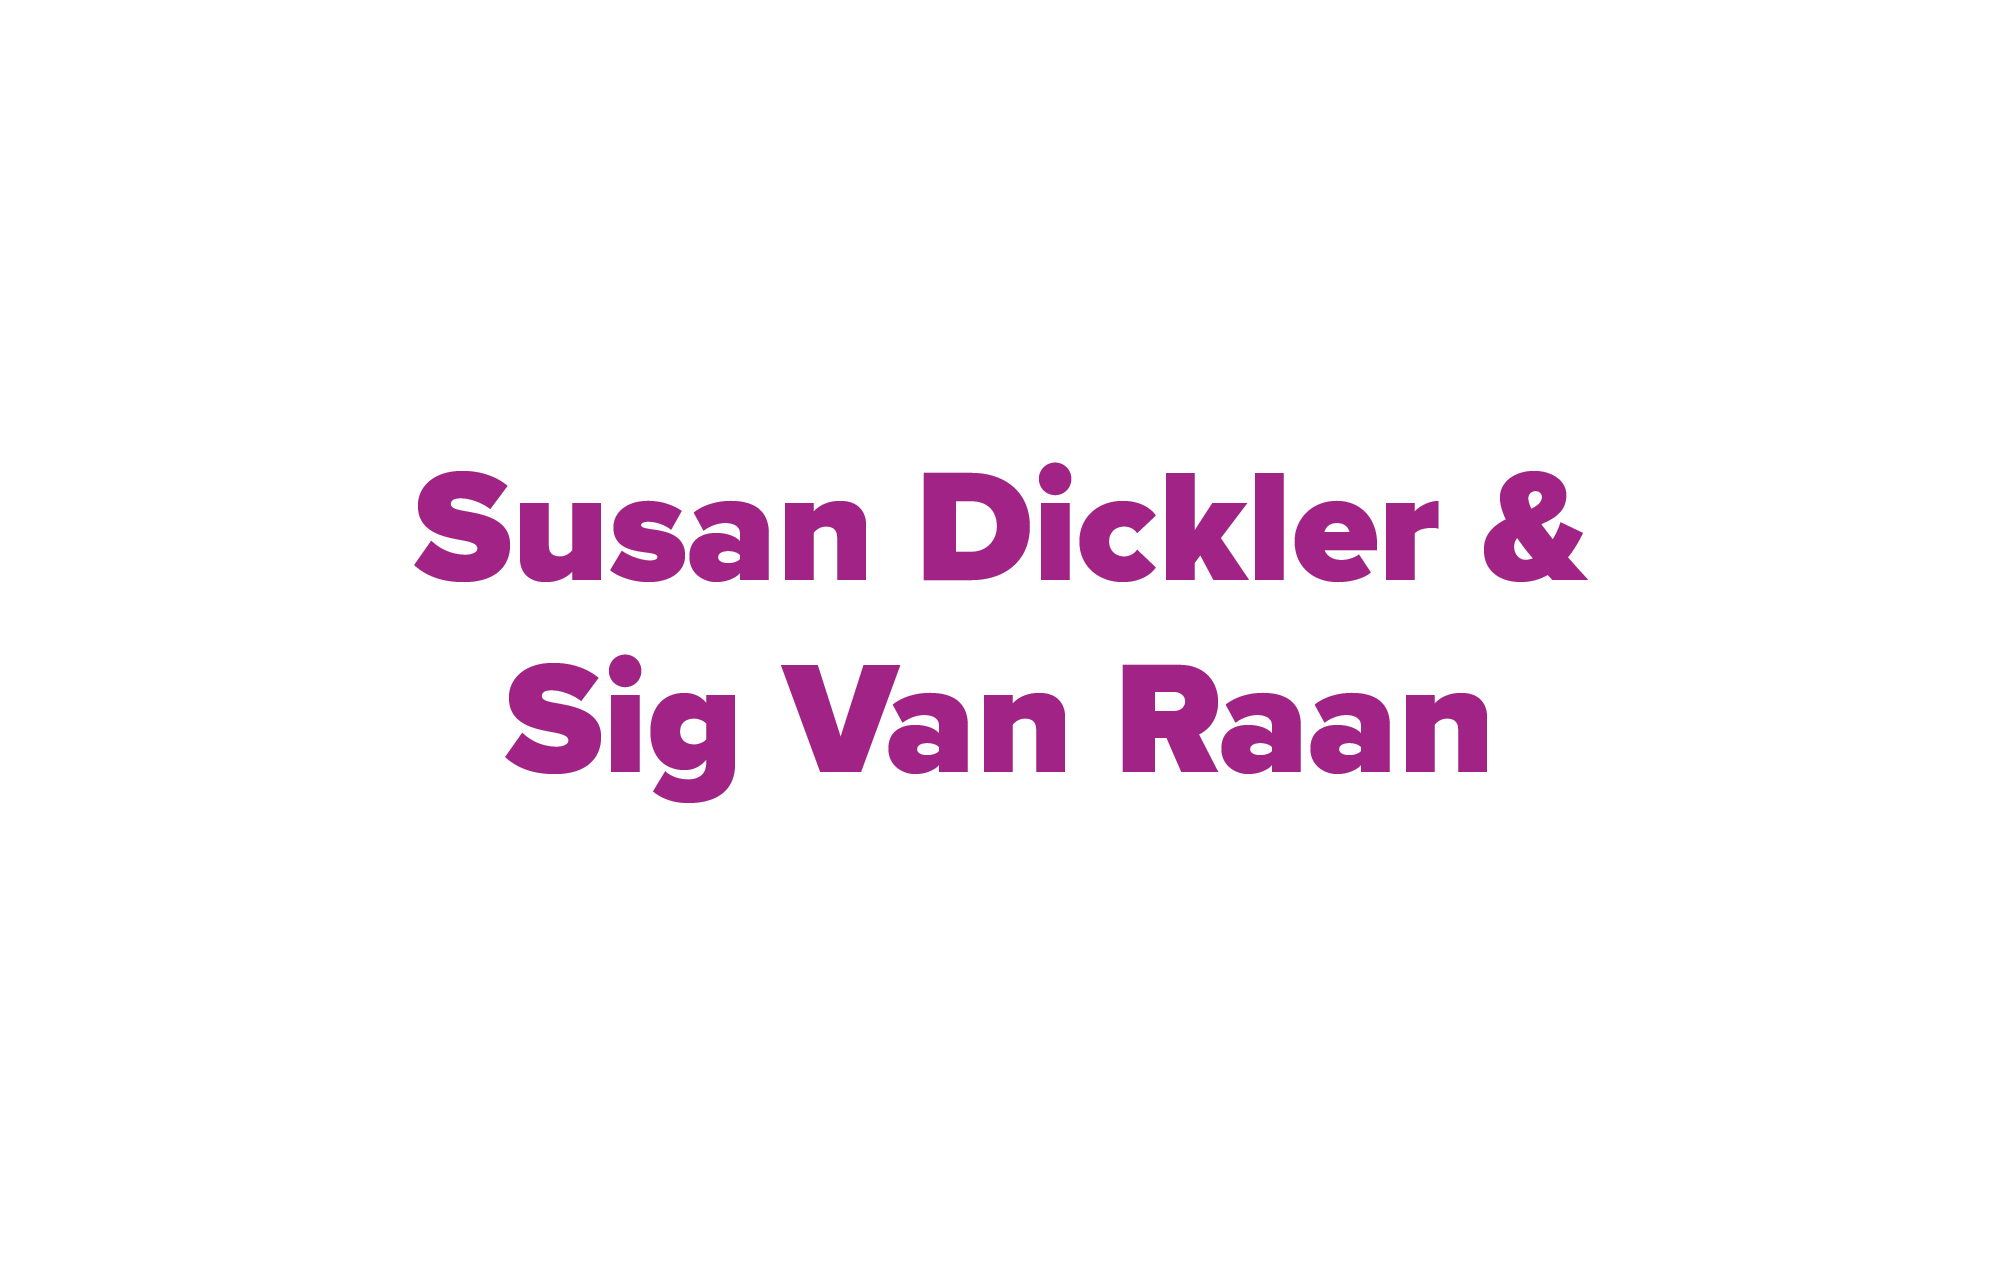 Susan Dickler & Sig Van Raan